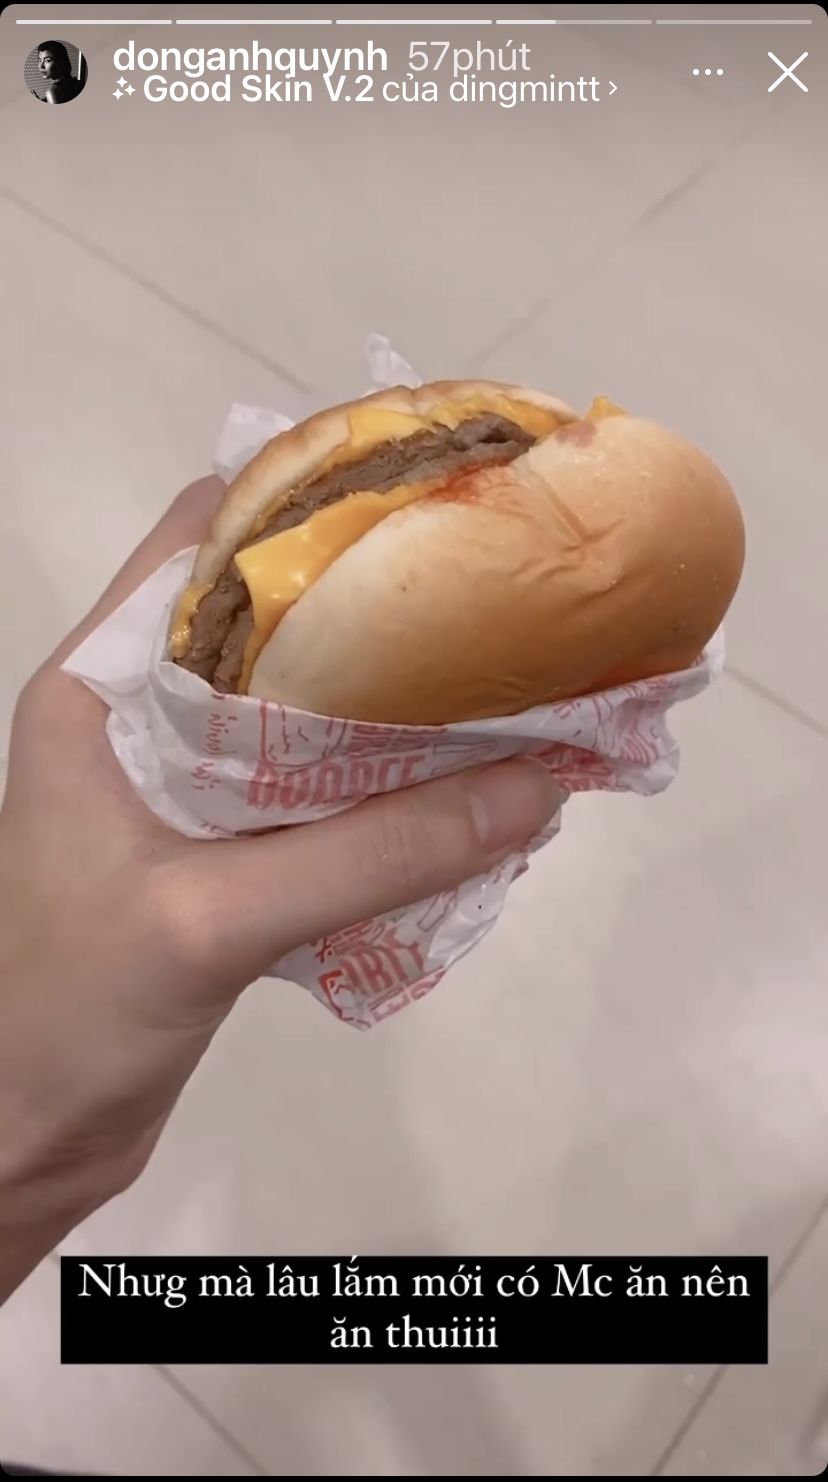 Lâu lắm rồi Đồng Ánh Quỳnh mới có dịp thưởng thức một chiếc bánh burger bò pho mai béo ngậy.